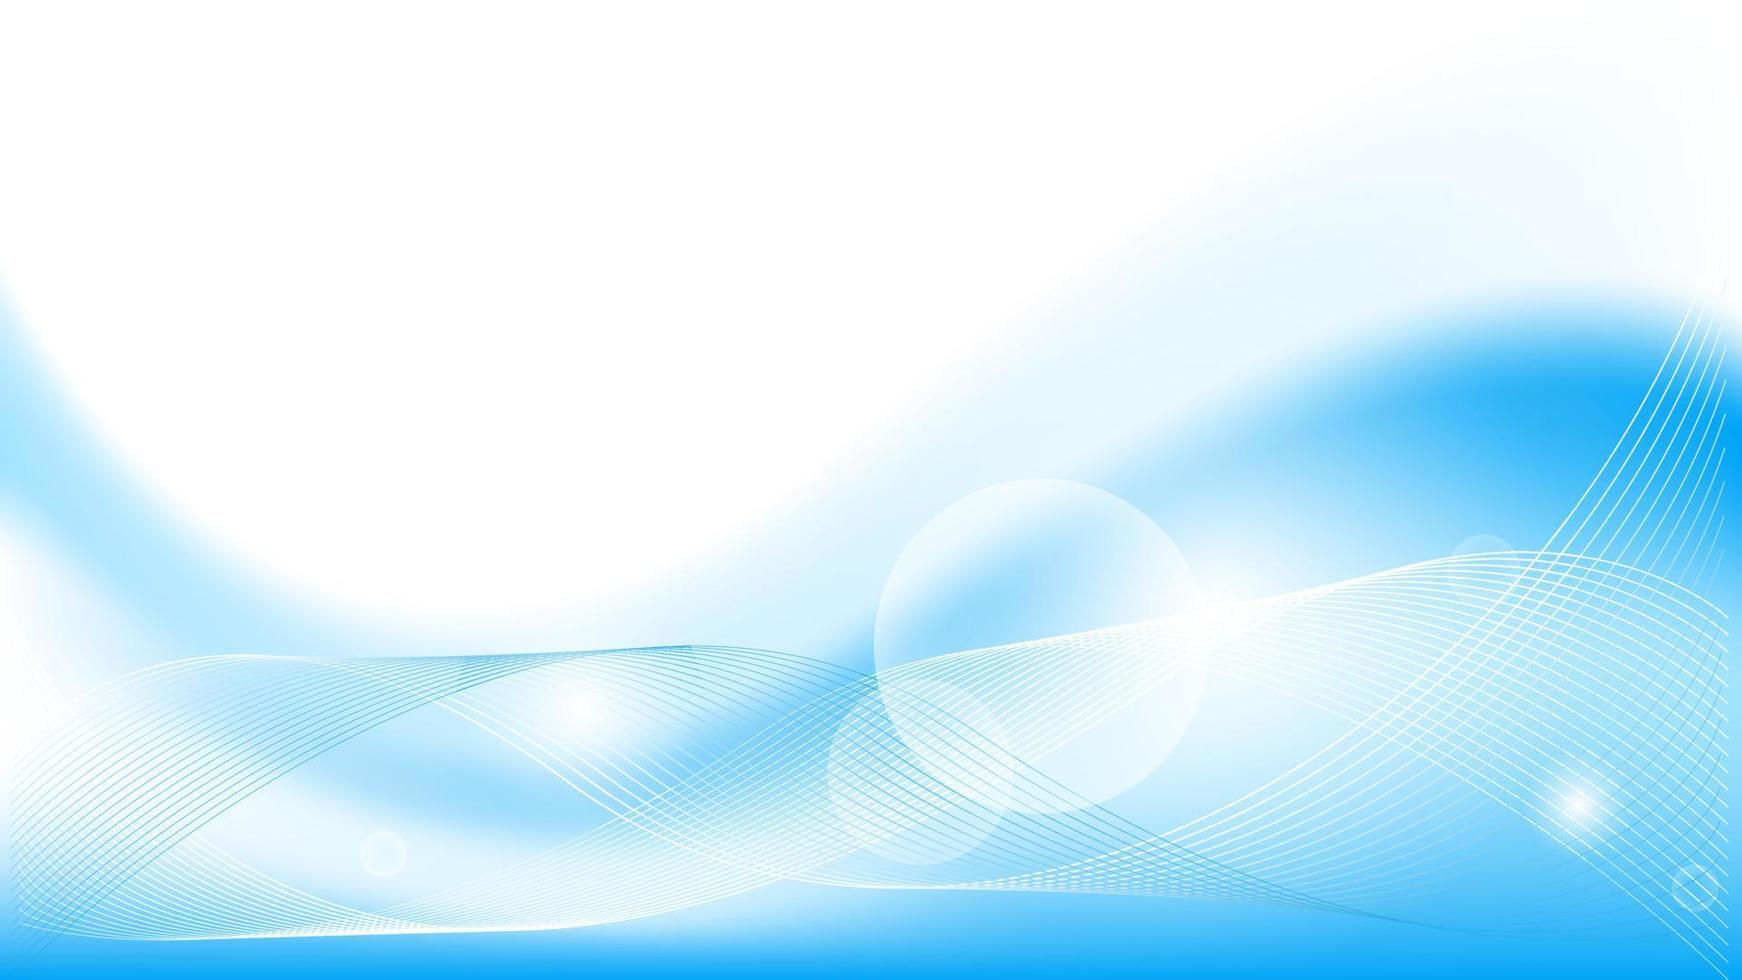 fundo de onda abstrata em azul e branco com linhas onduladas. adequado para apresentação, banner, cartaz, web, etc. ilustração vetorial vetor